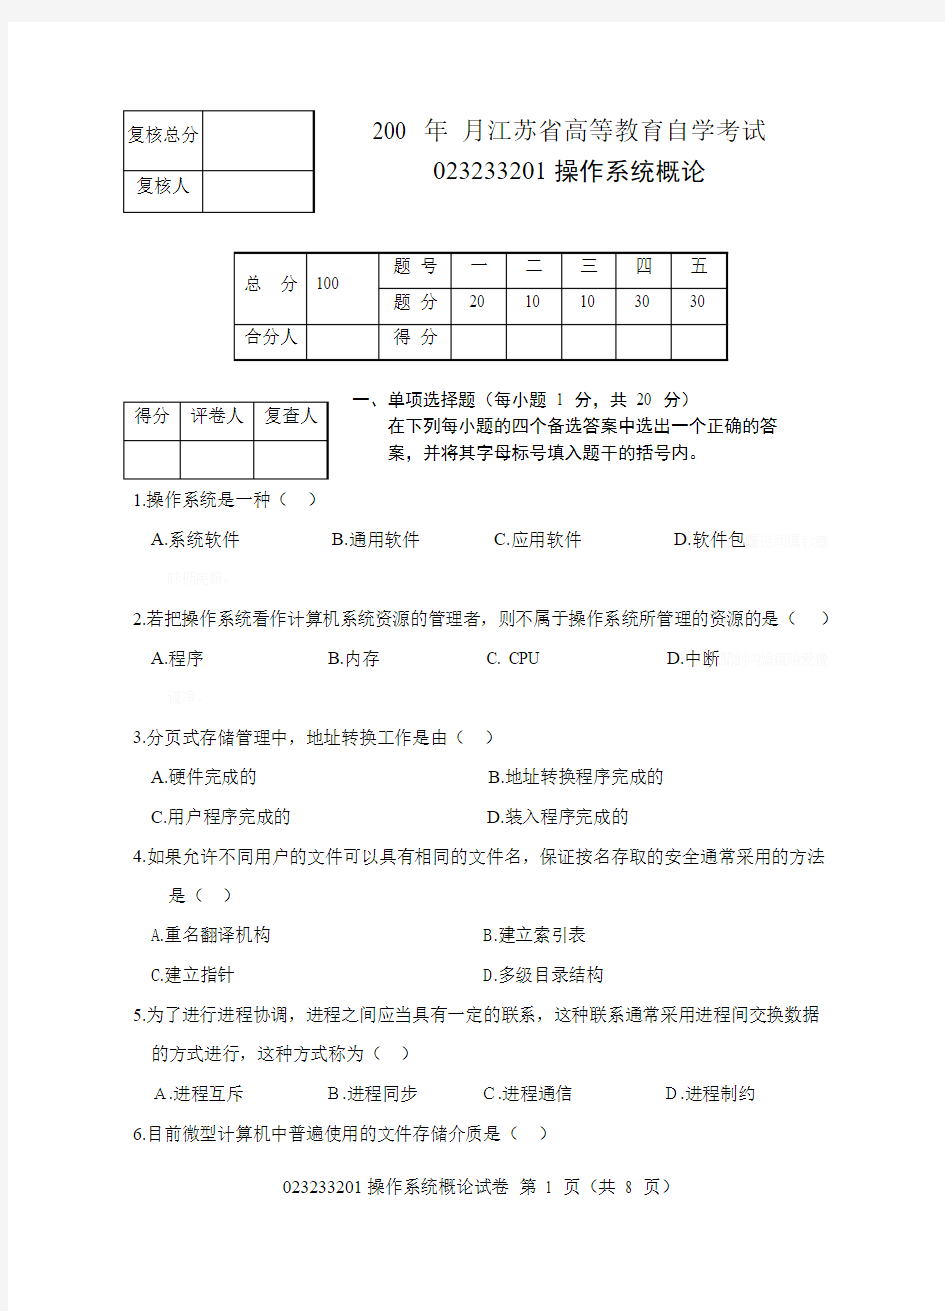 江苏省自学考试操作完整系统试题与答案